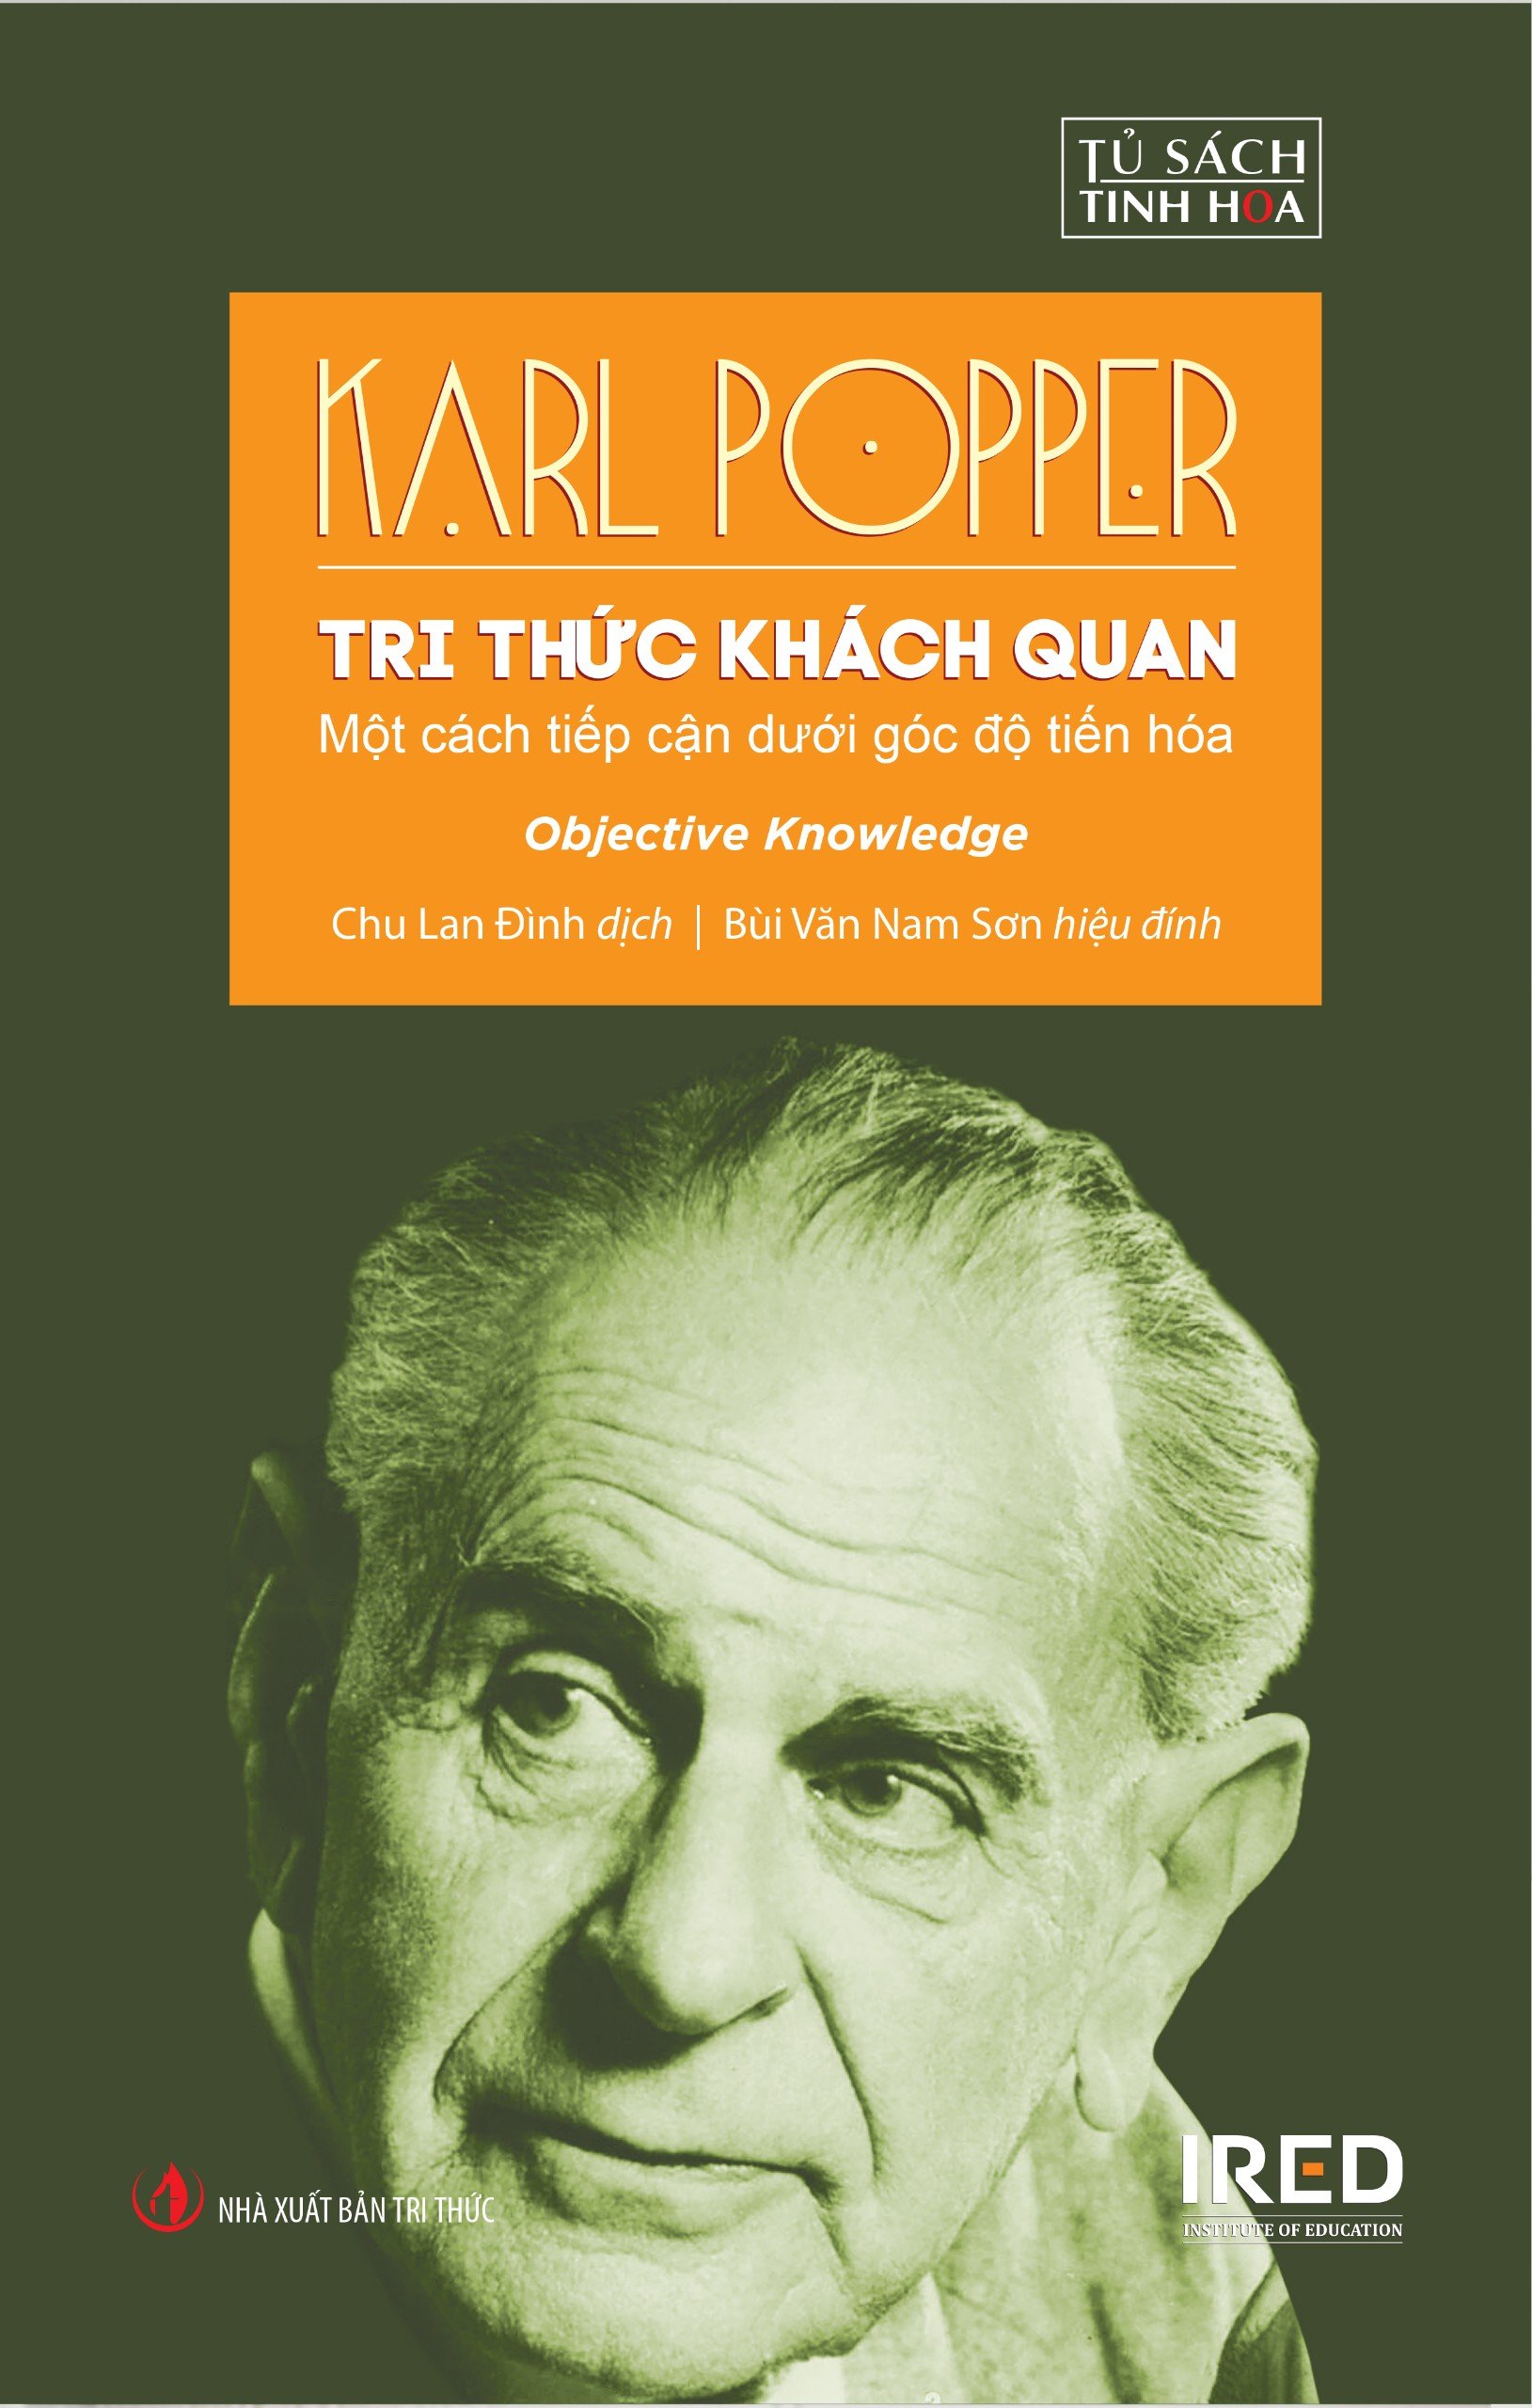 (Bìa Cứng) TRI THỨC KHÁCH QUAN (Objective Knowledge) - Một cách tiếp cận dưới góc độ tiến hóa - Karl Popper - Chu Lan Đình dịch, Bùi Văn Nam Sơn hiệu đính